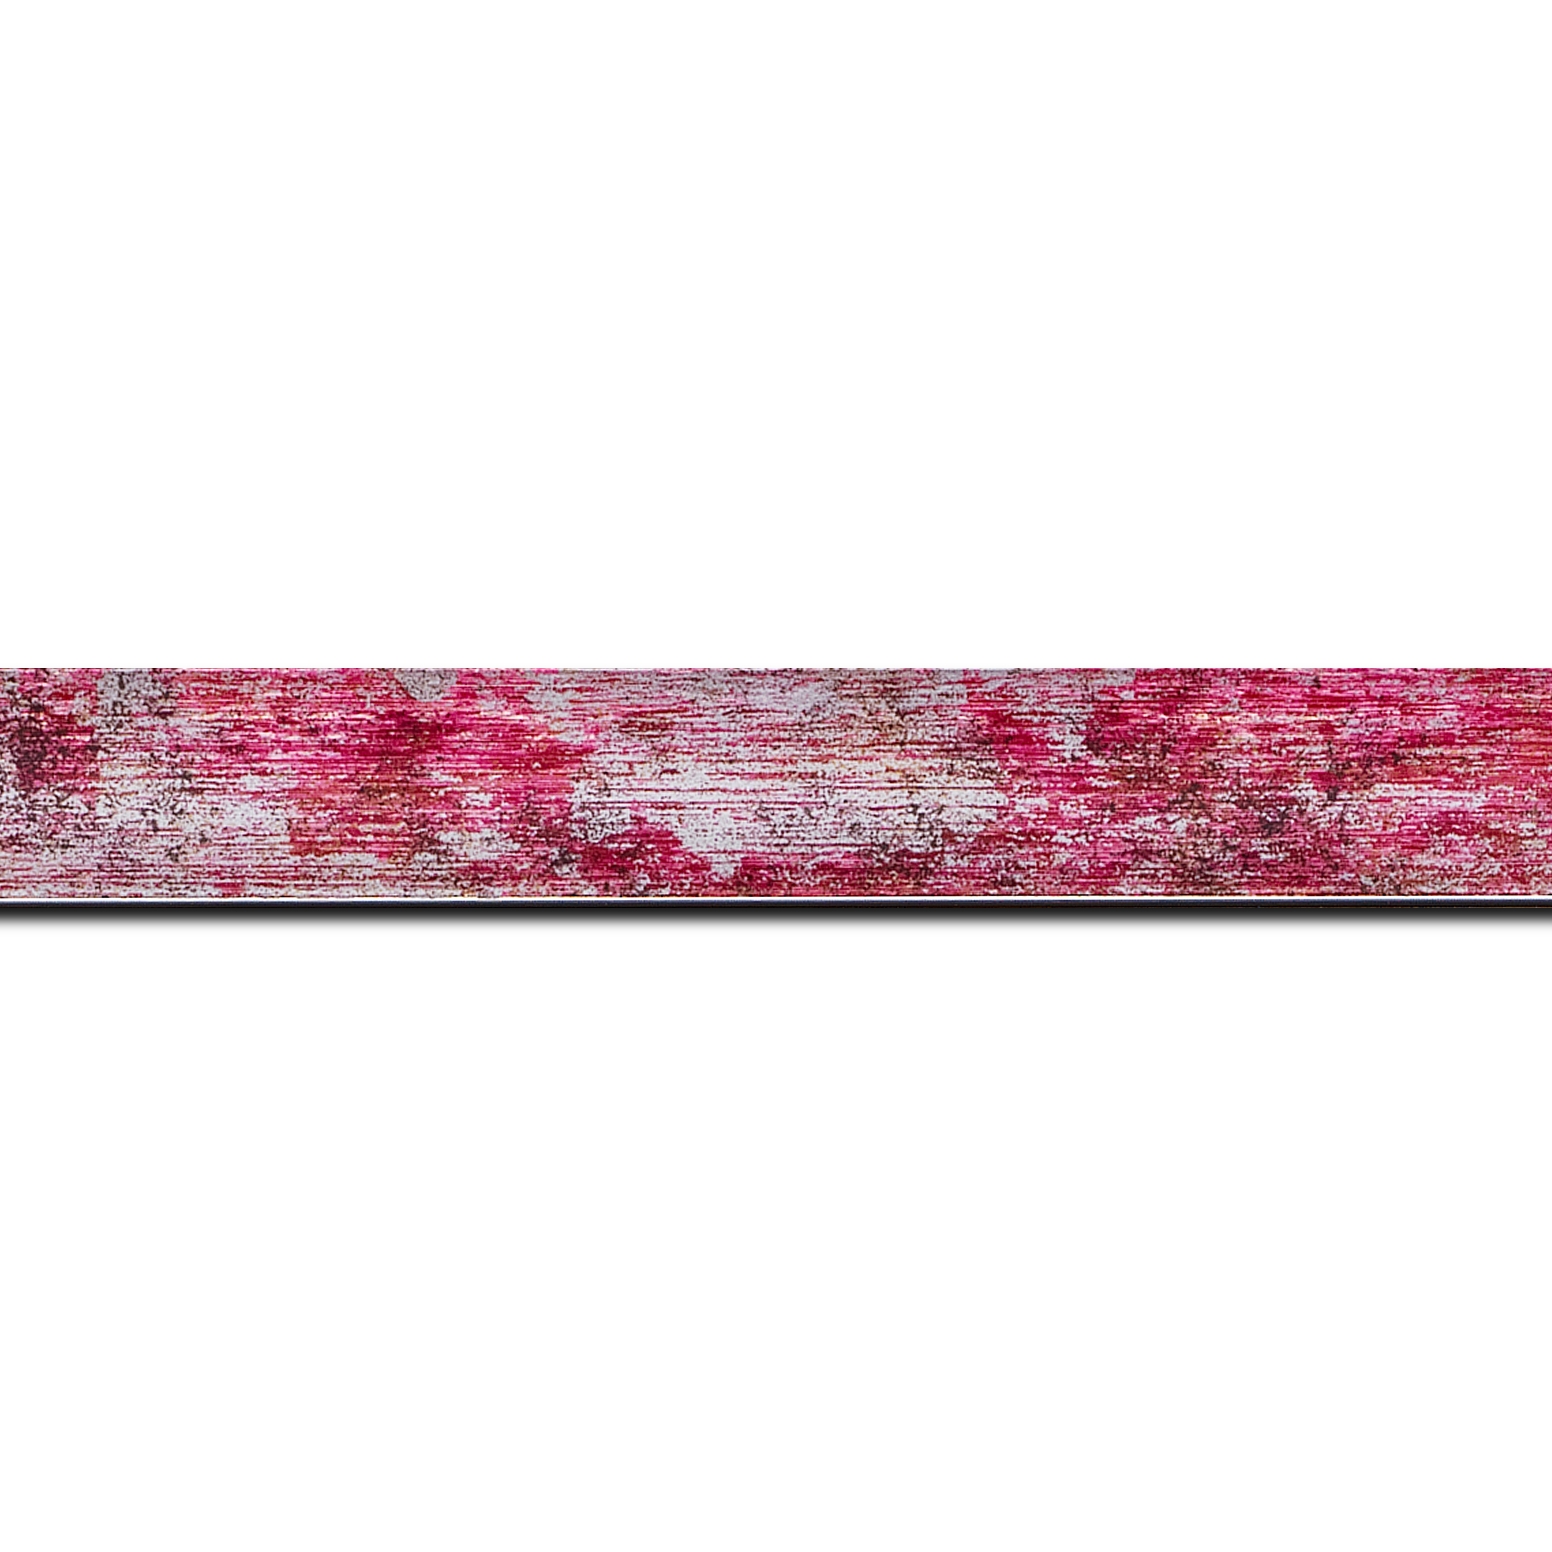 Baguette longueur 1.40m bois profil concave largeur 2.4cm de couleur fushia moucheté fond argent